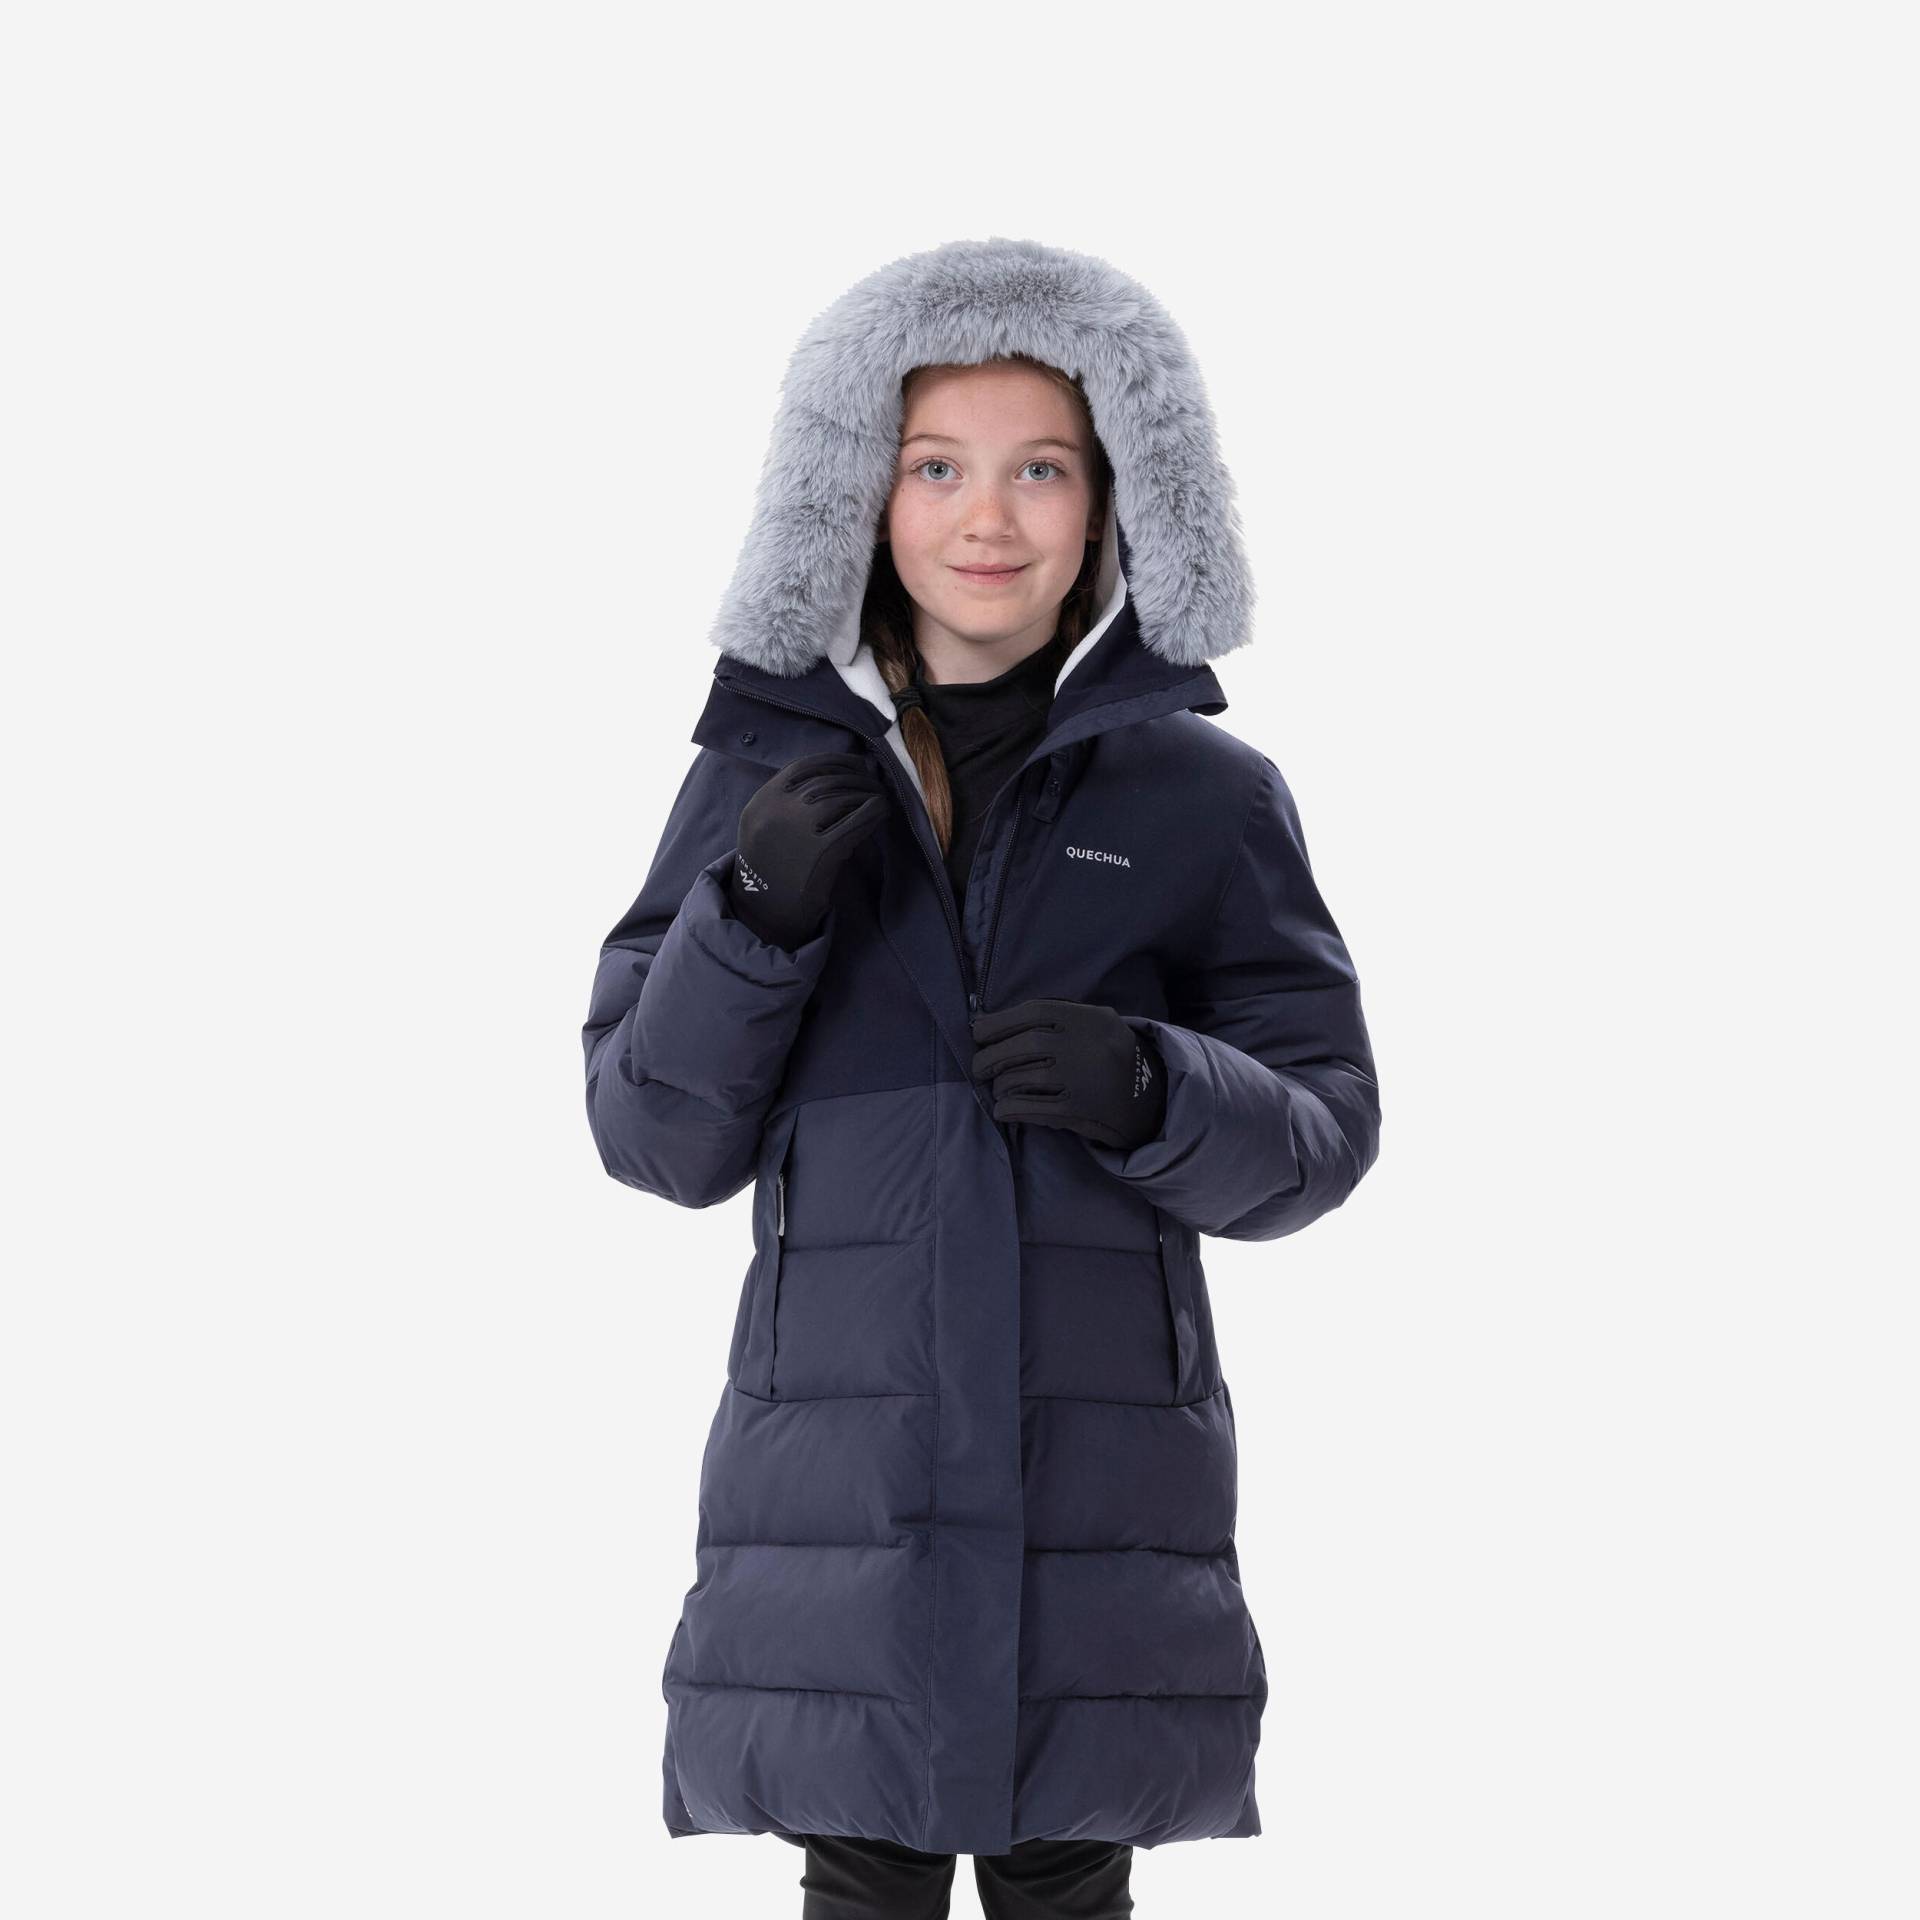 Winterjacke Kinder Gr.122-170 wattiert wasserdicht warm bis -8°C Wandern - SH500 von QUECHUA